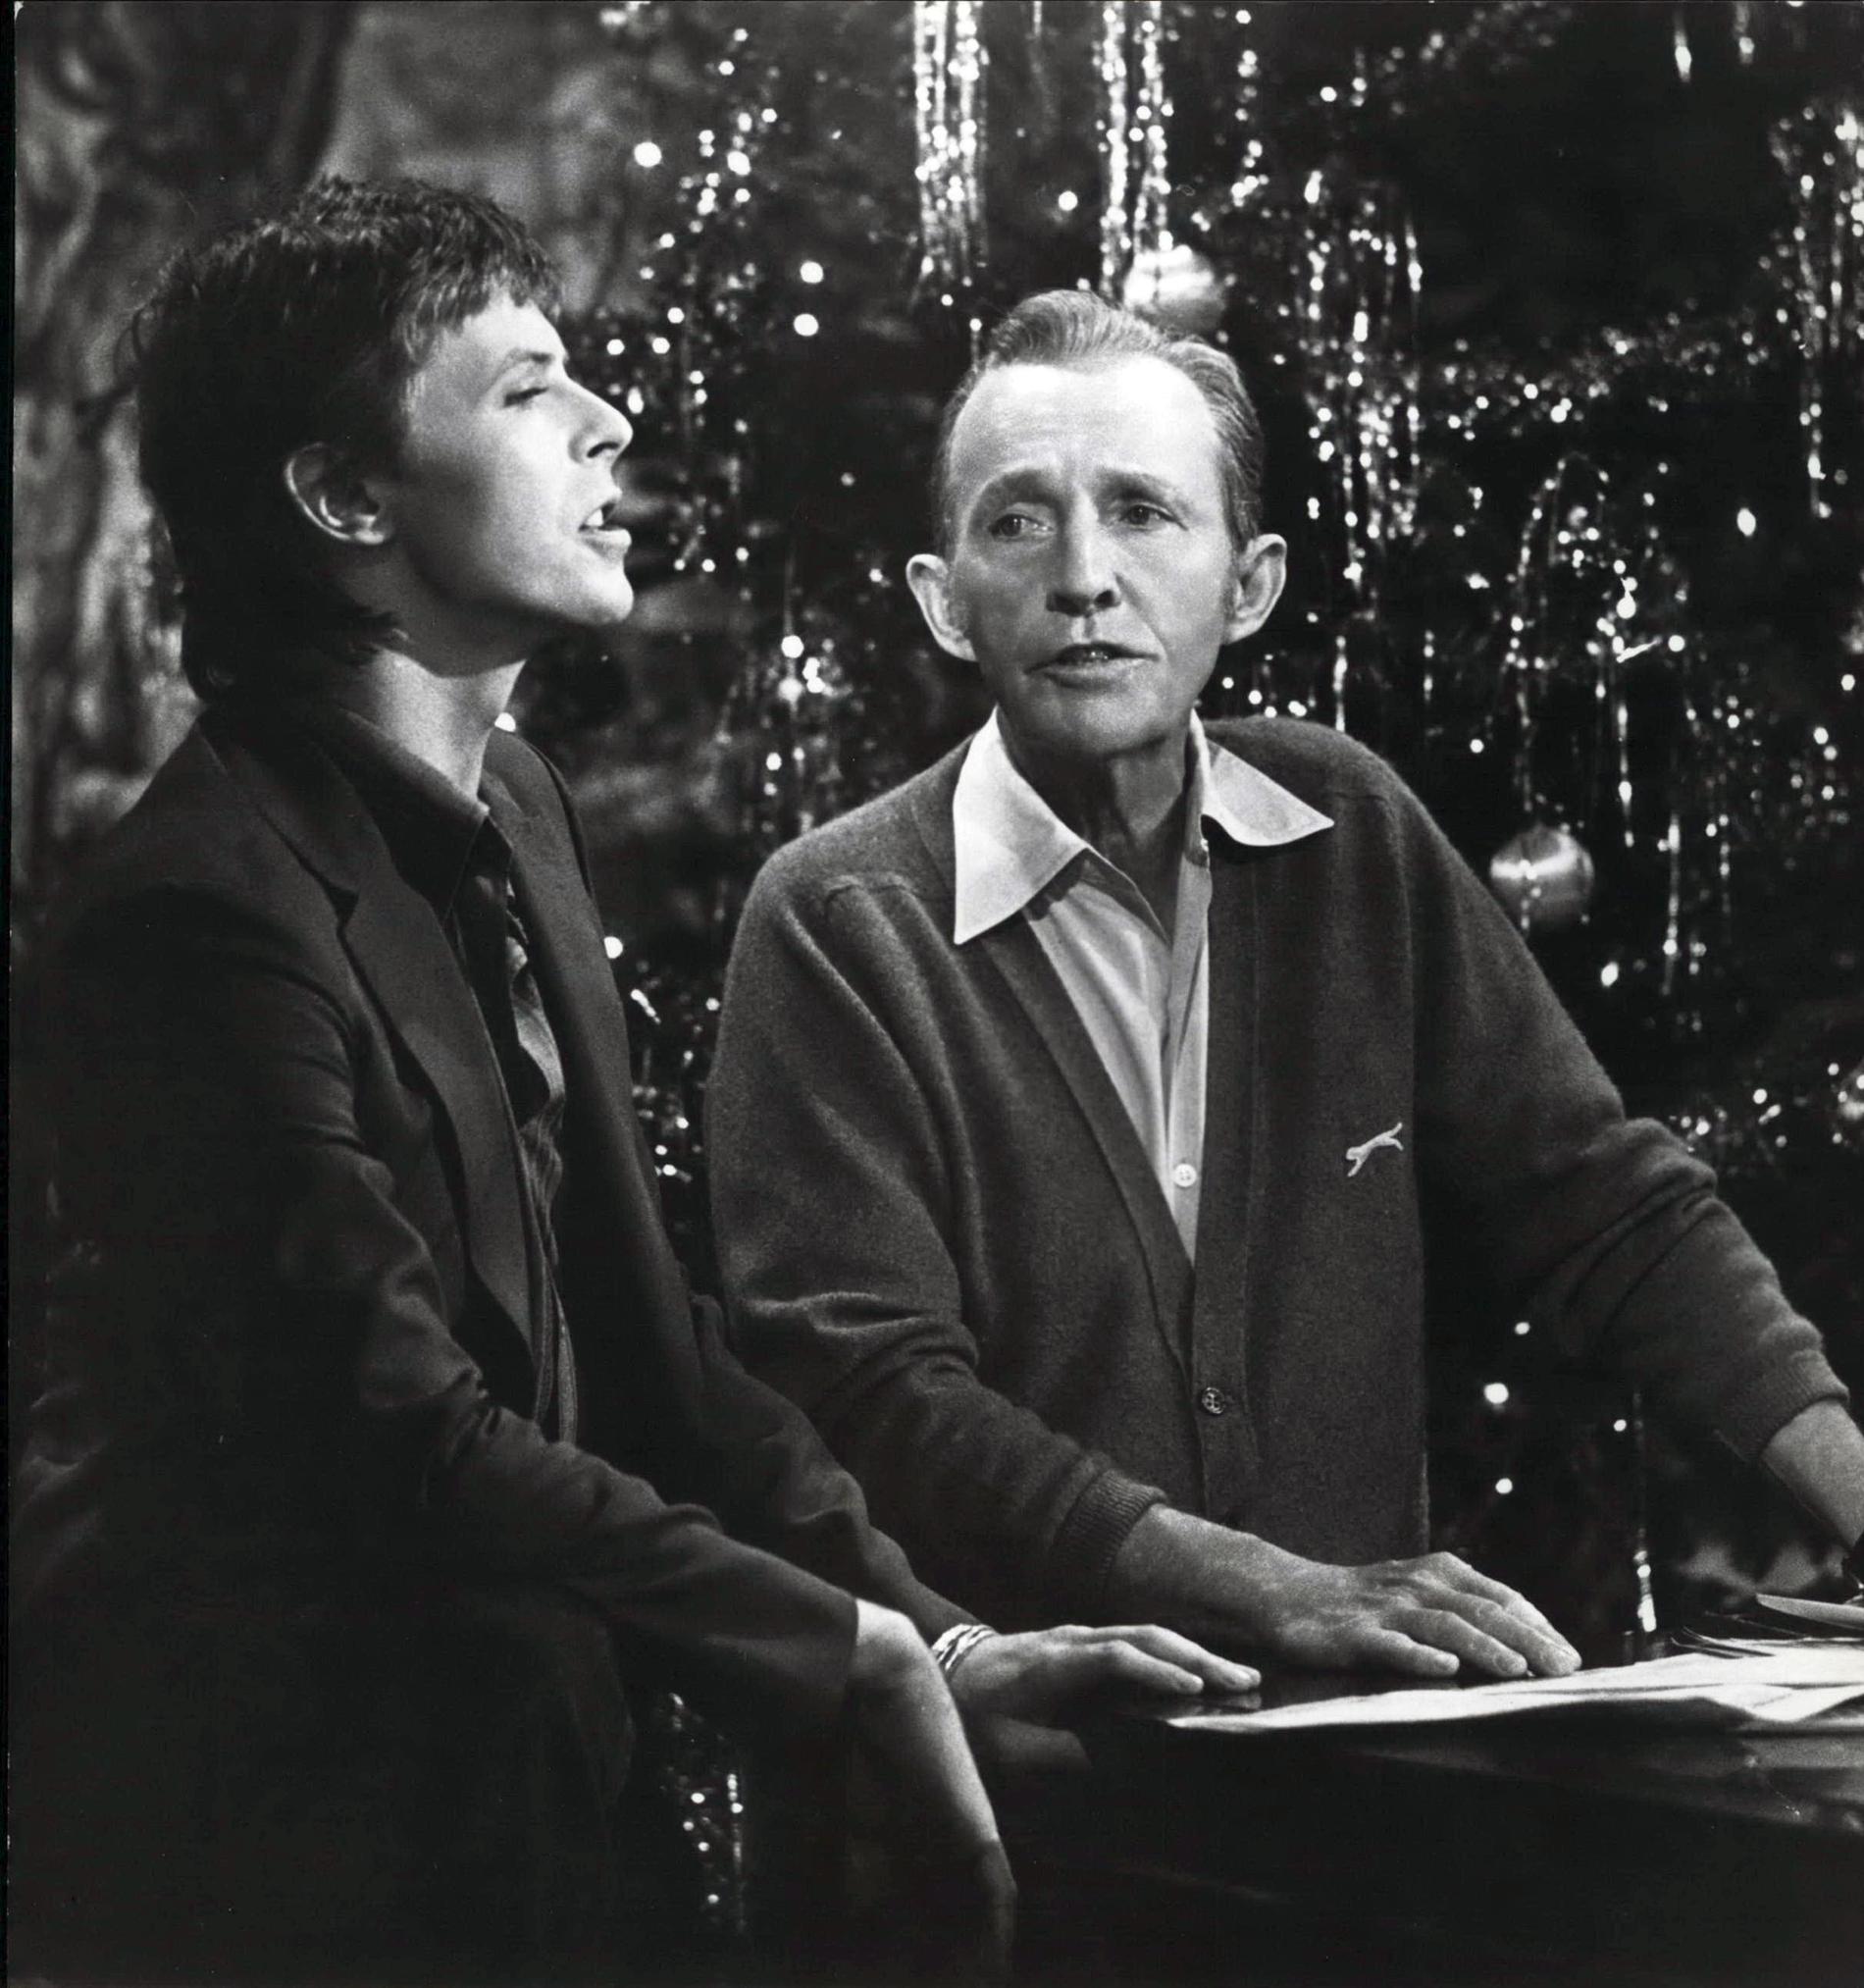 "Peace on Earth/Little Drummer Boy" med Bing Crosby i en julspecial för TV 1977